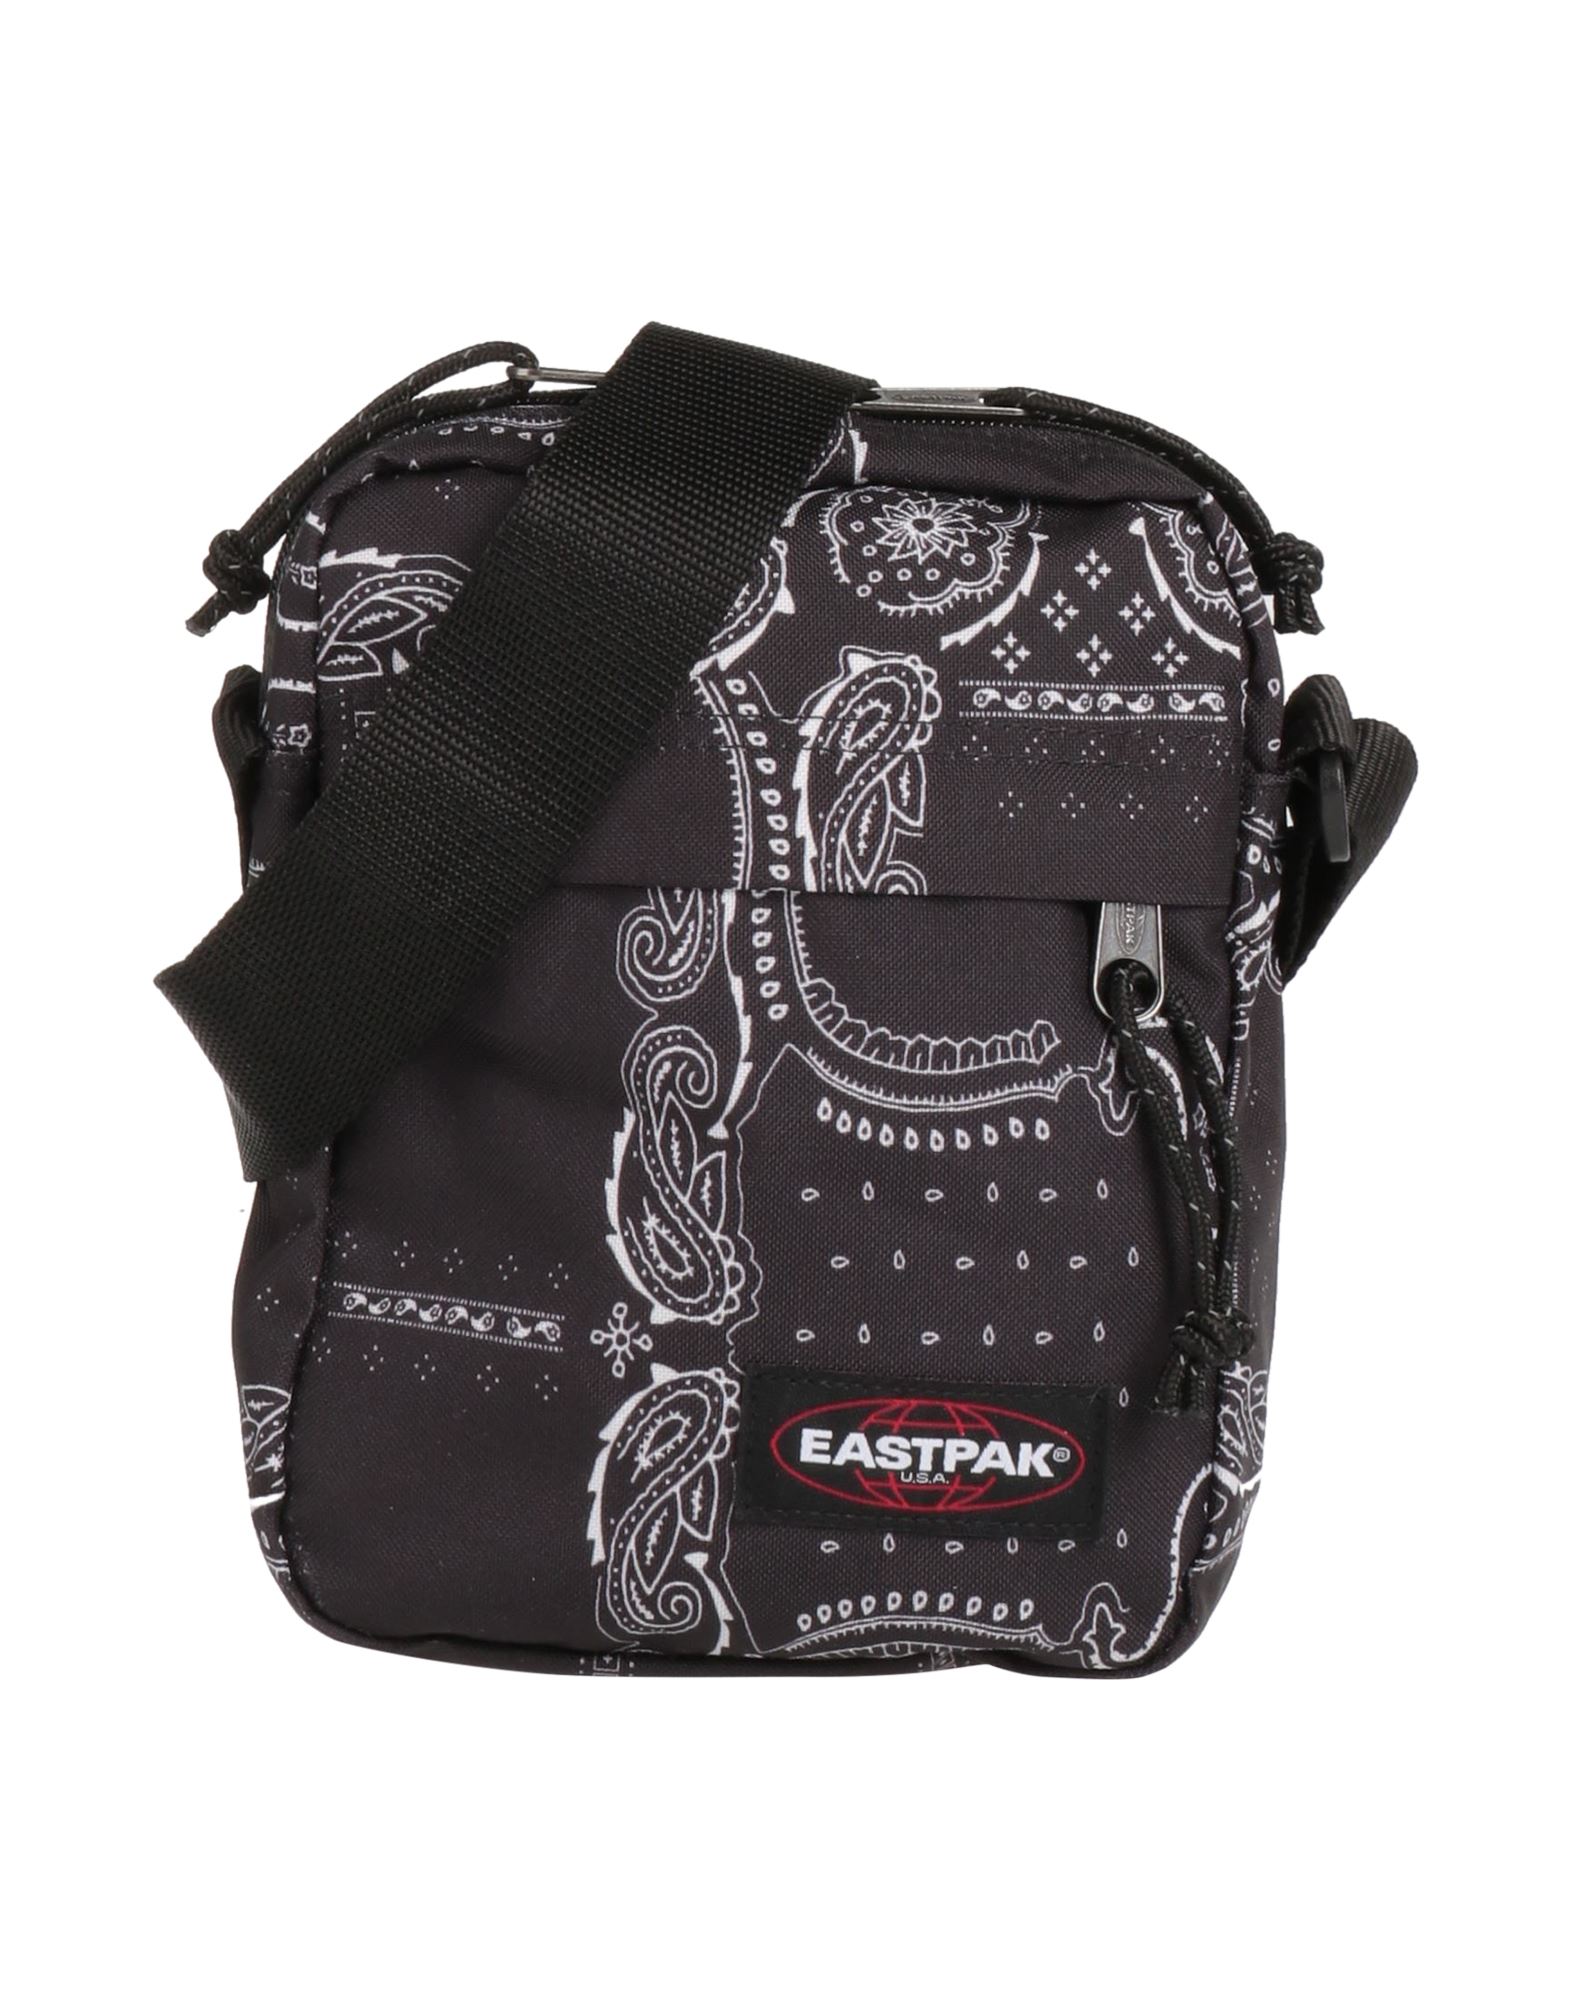 Eastpak Handbags In Steel Grey